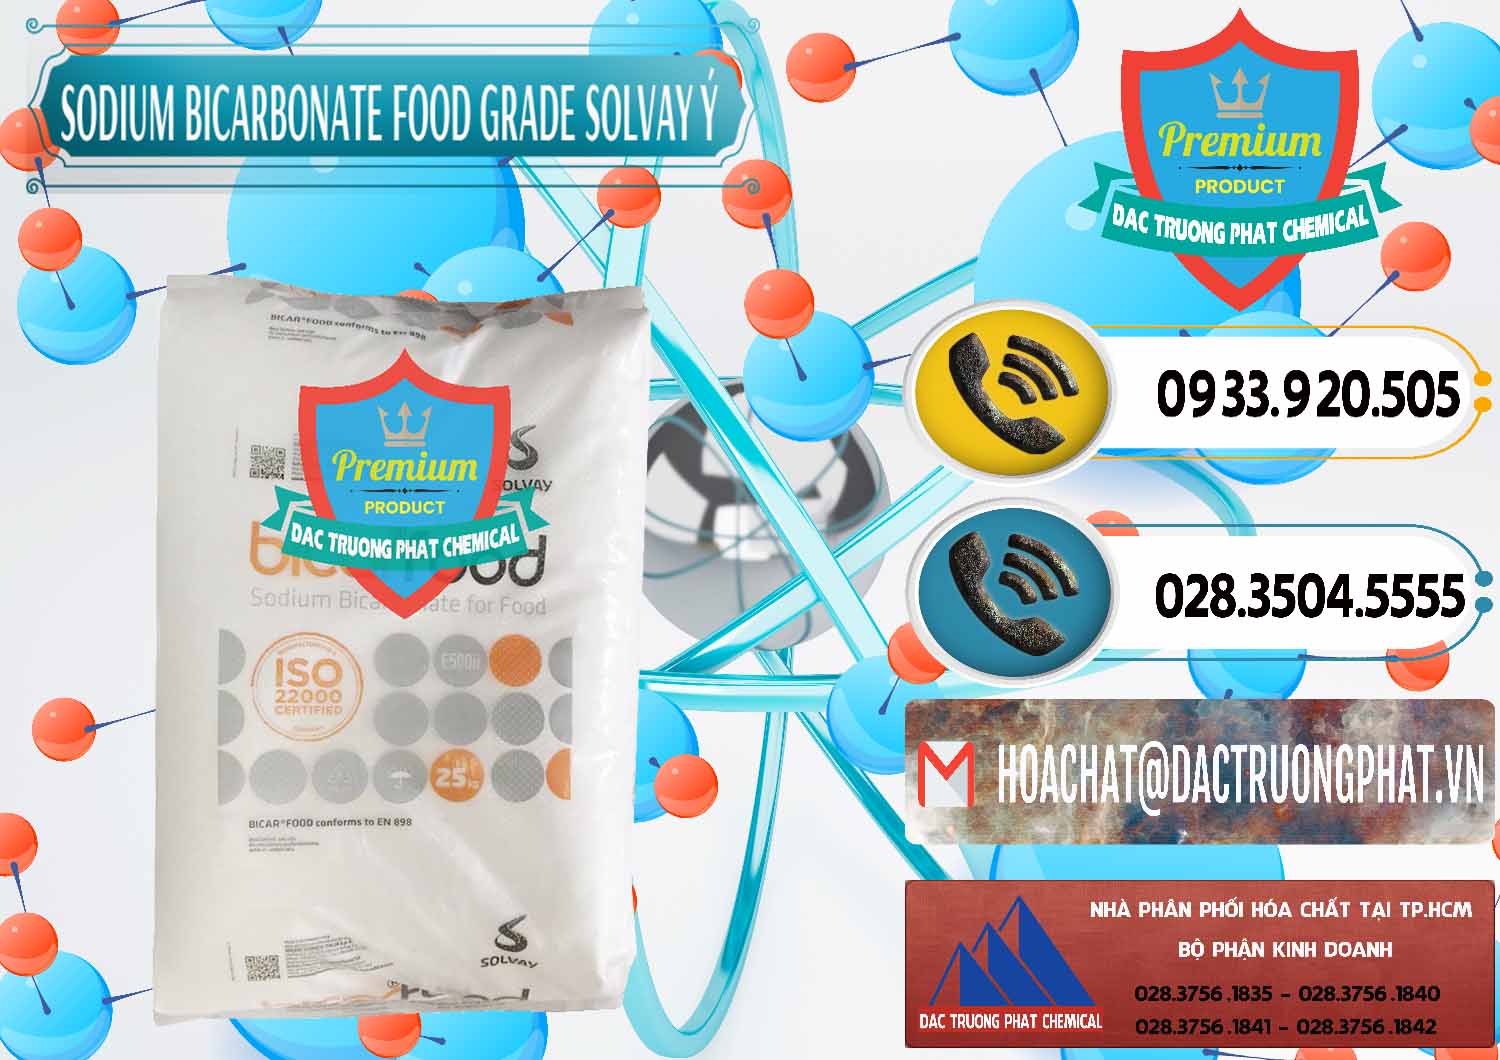 Nơi chuyên bán - cung cấp Sodium Bicarbonate – Bicar NaHCO3 Food Grade Solvay Ý Italy - 0220 - Cty chuyên phân phối & bán hóa chất tại TP.HCM - hoachatdetnhuom.vn